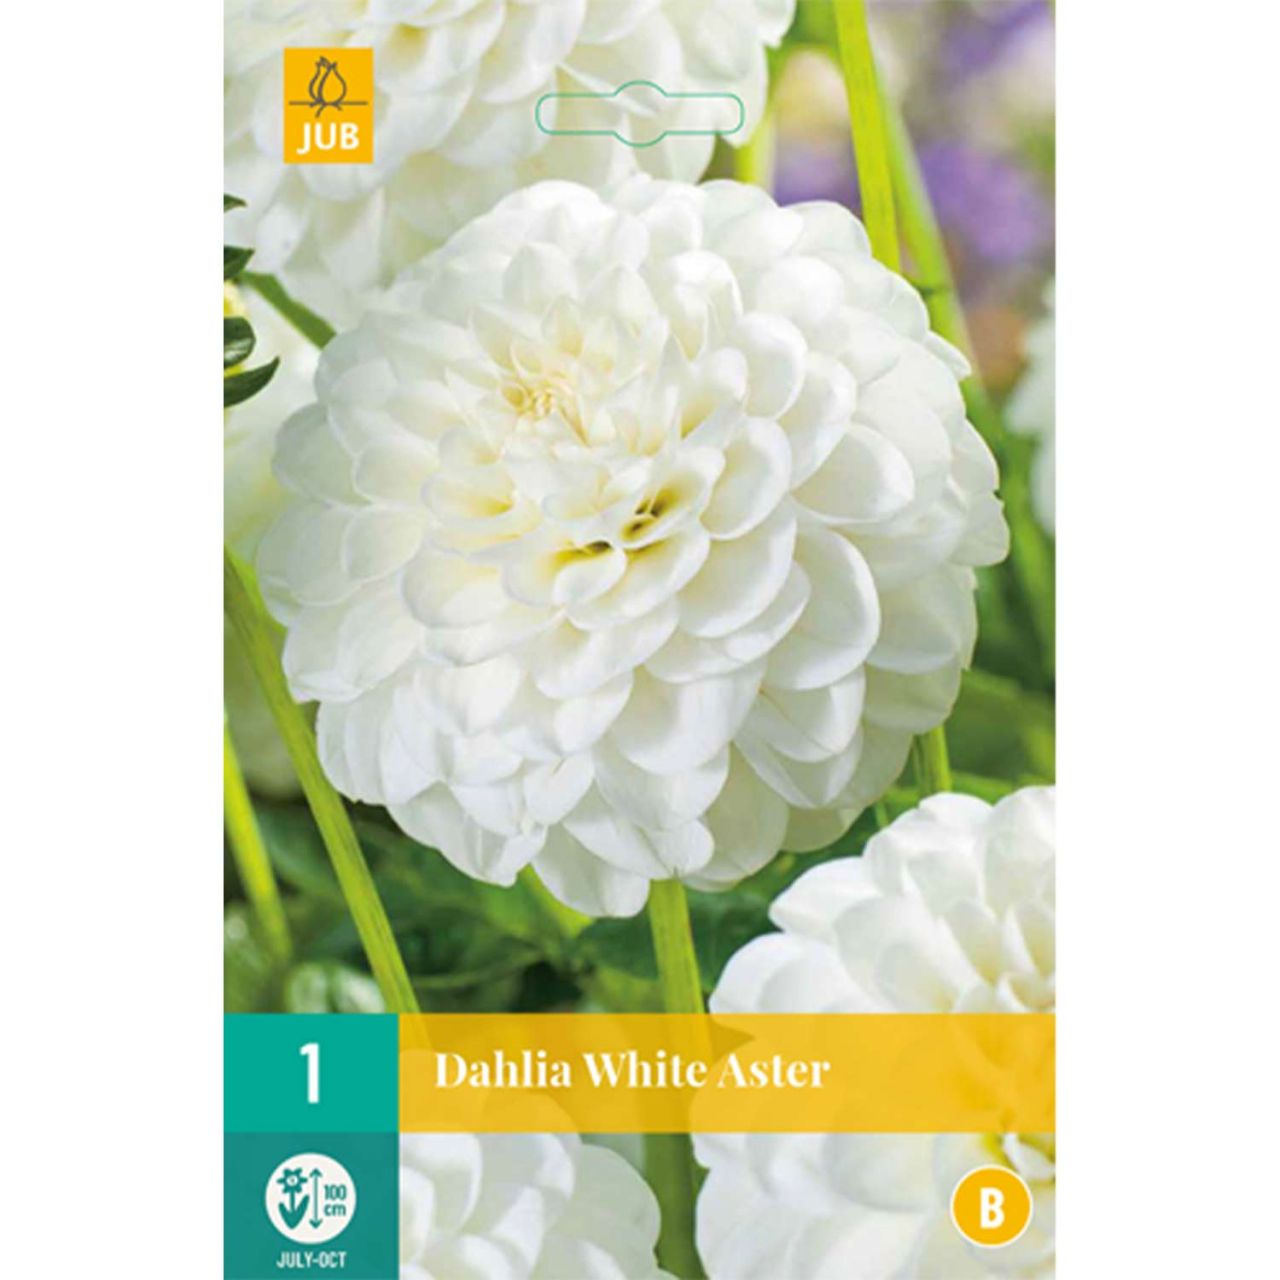 Kategorie <b>Frühlings-Blumenzwiebeln </b> - Pompondahlie 'White Aster' - Dahlia 'White Aster'